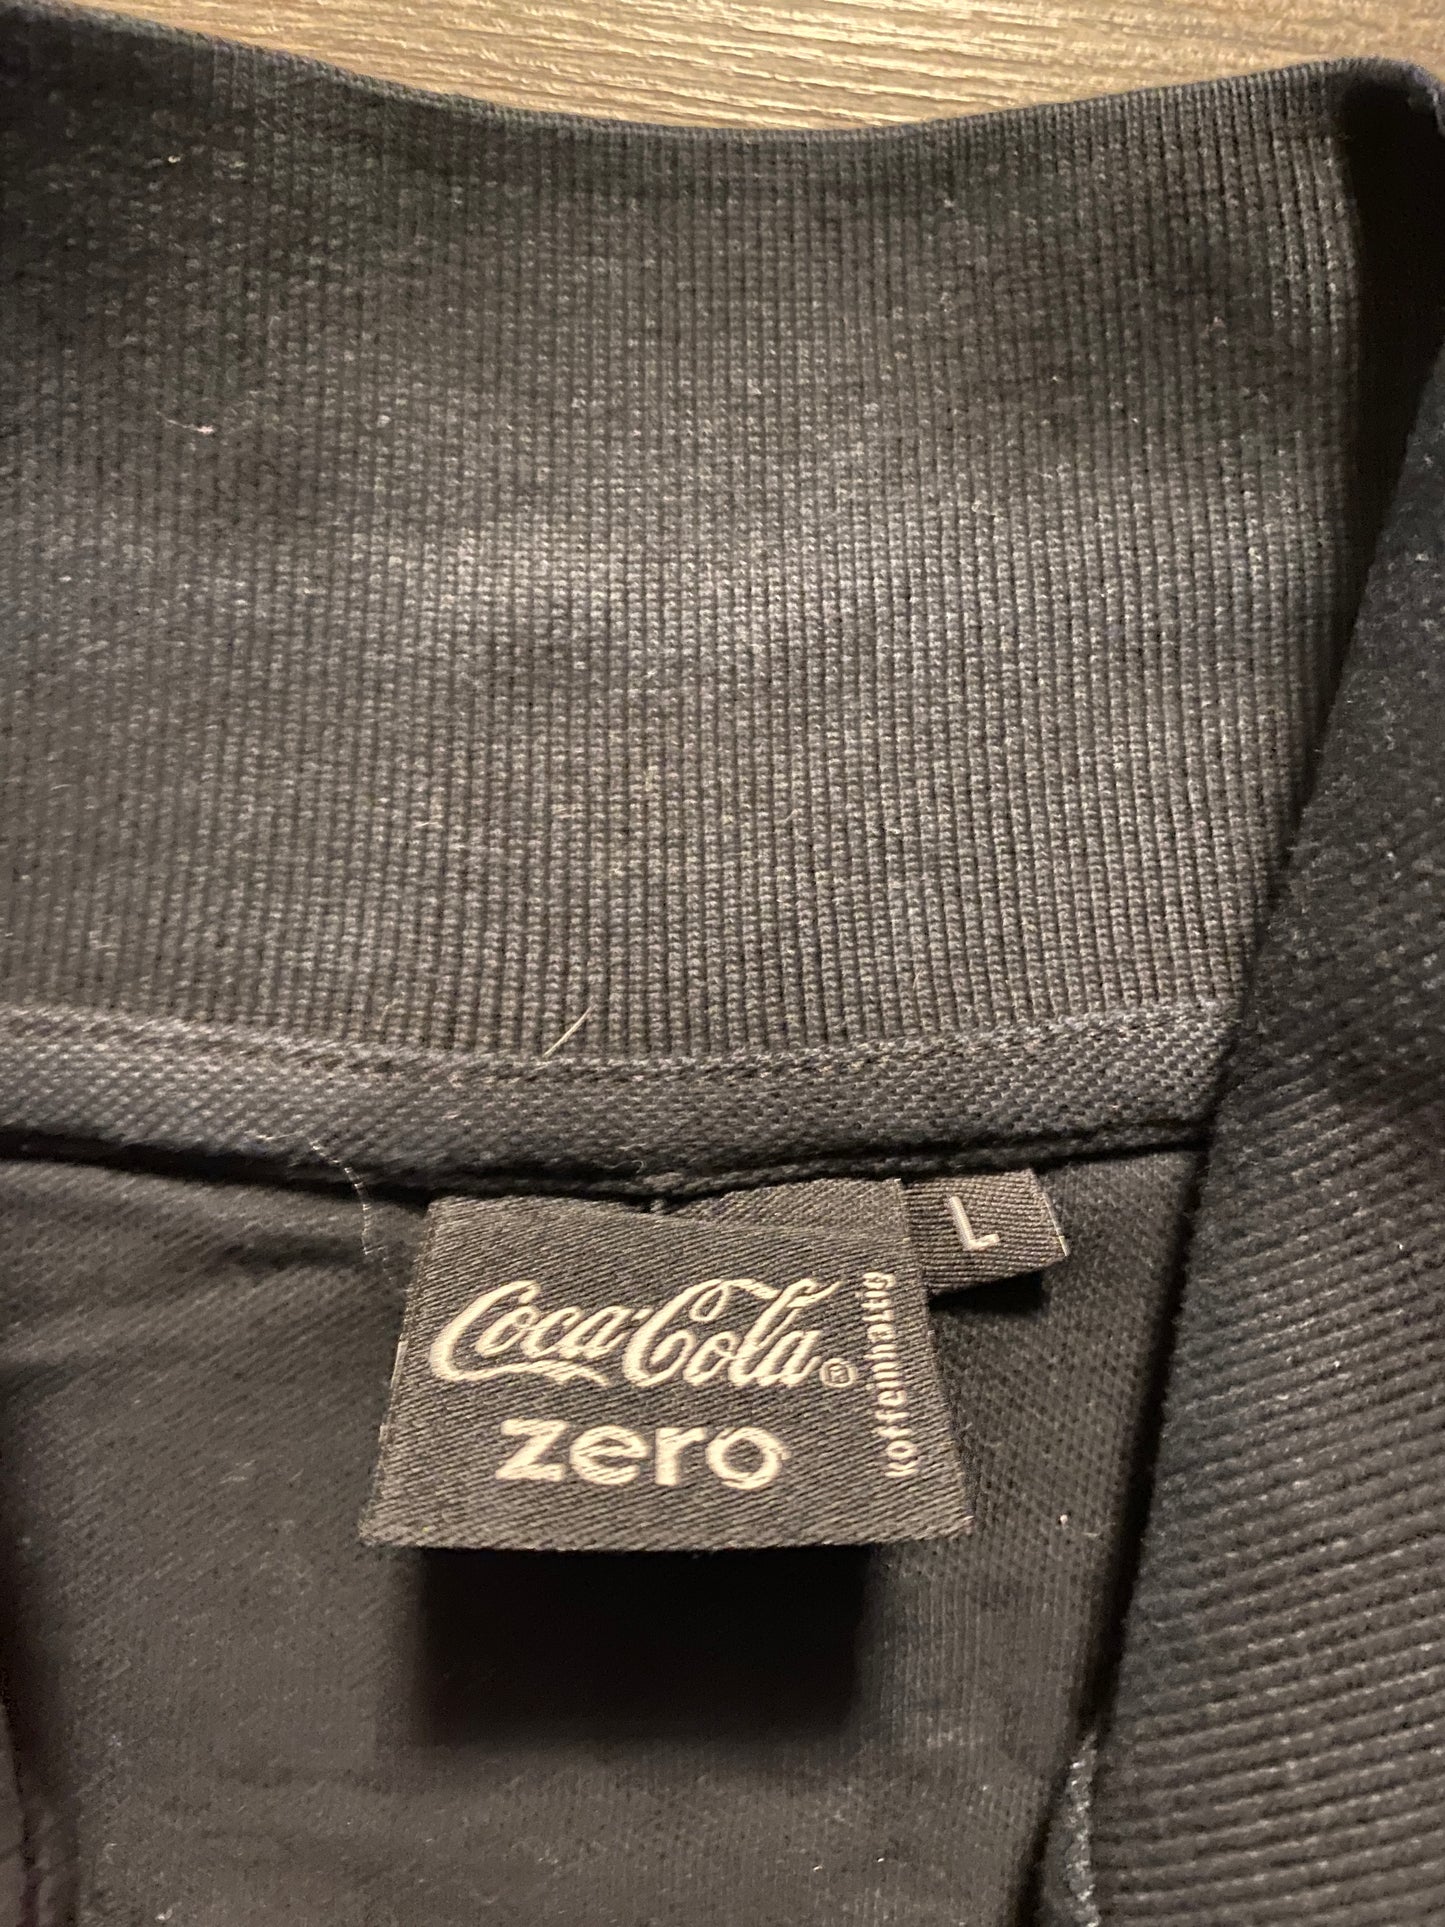 Polo T-Shirt Coca Cola